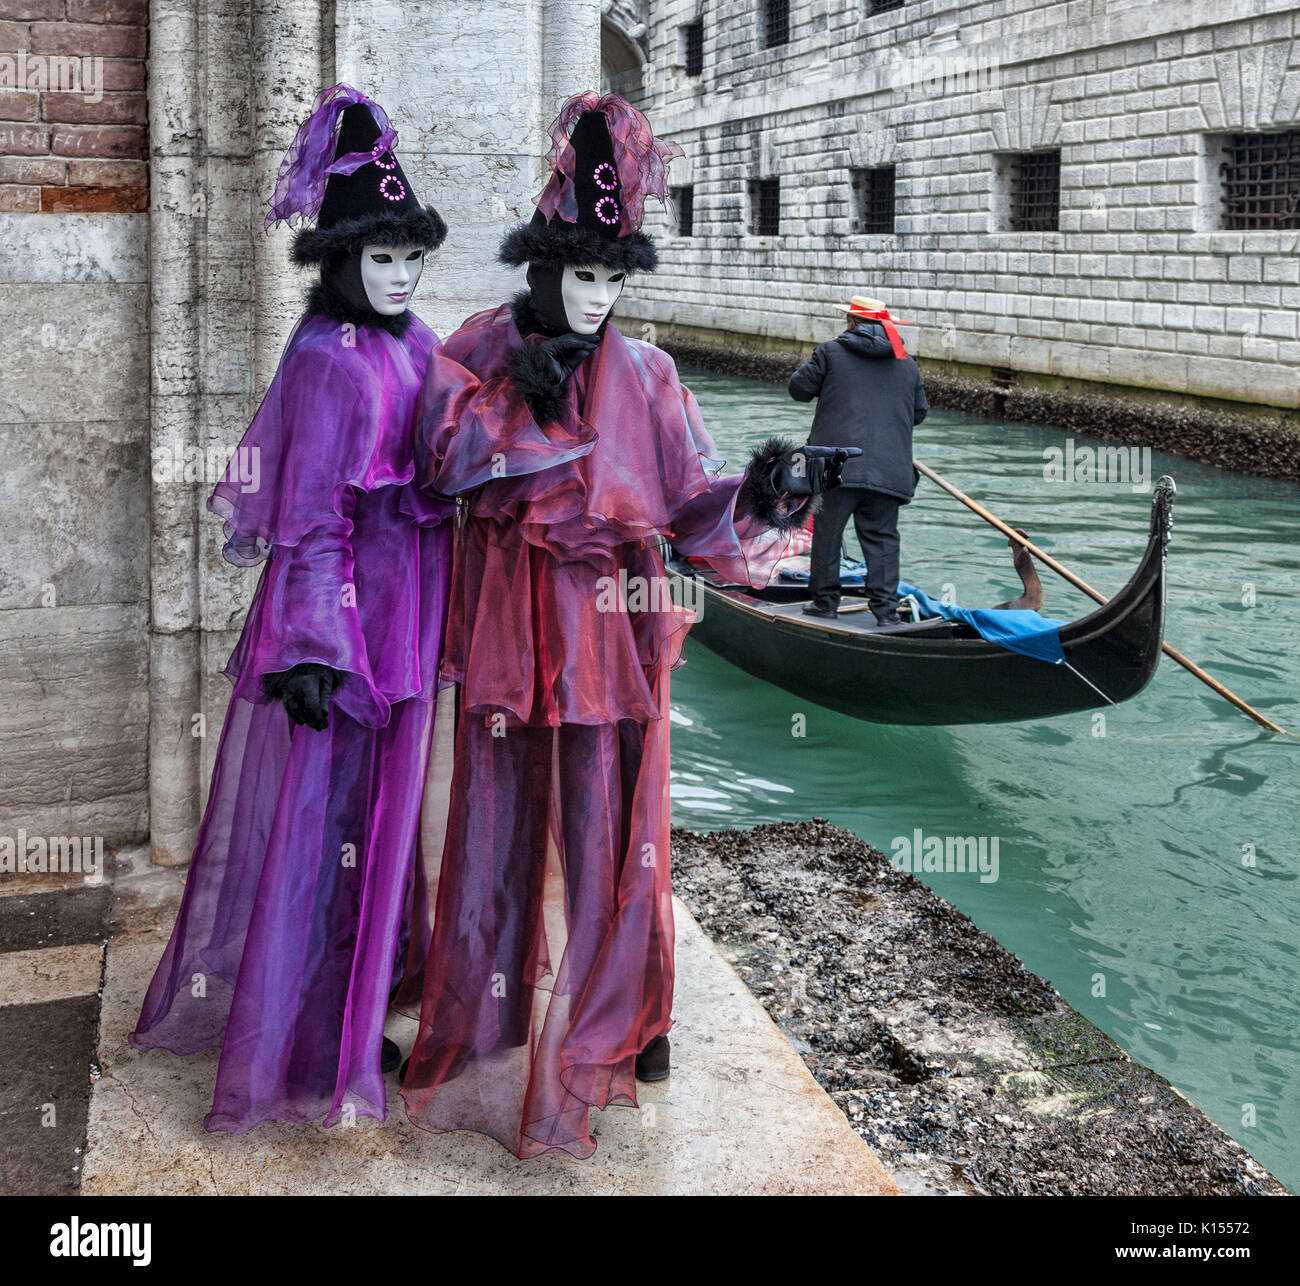 Venedig, Italien - 18 Februar 2012: Zwei Personen tragen bestimmte Kostüme und Masken, während ein gondoliere, vorbei an einem kleinen Kanal in Venedig während ist Stockfoto